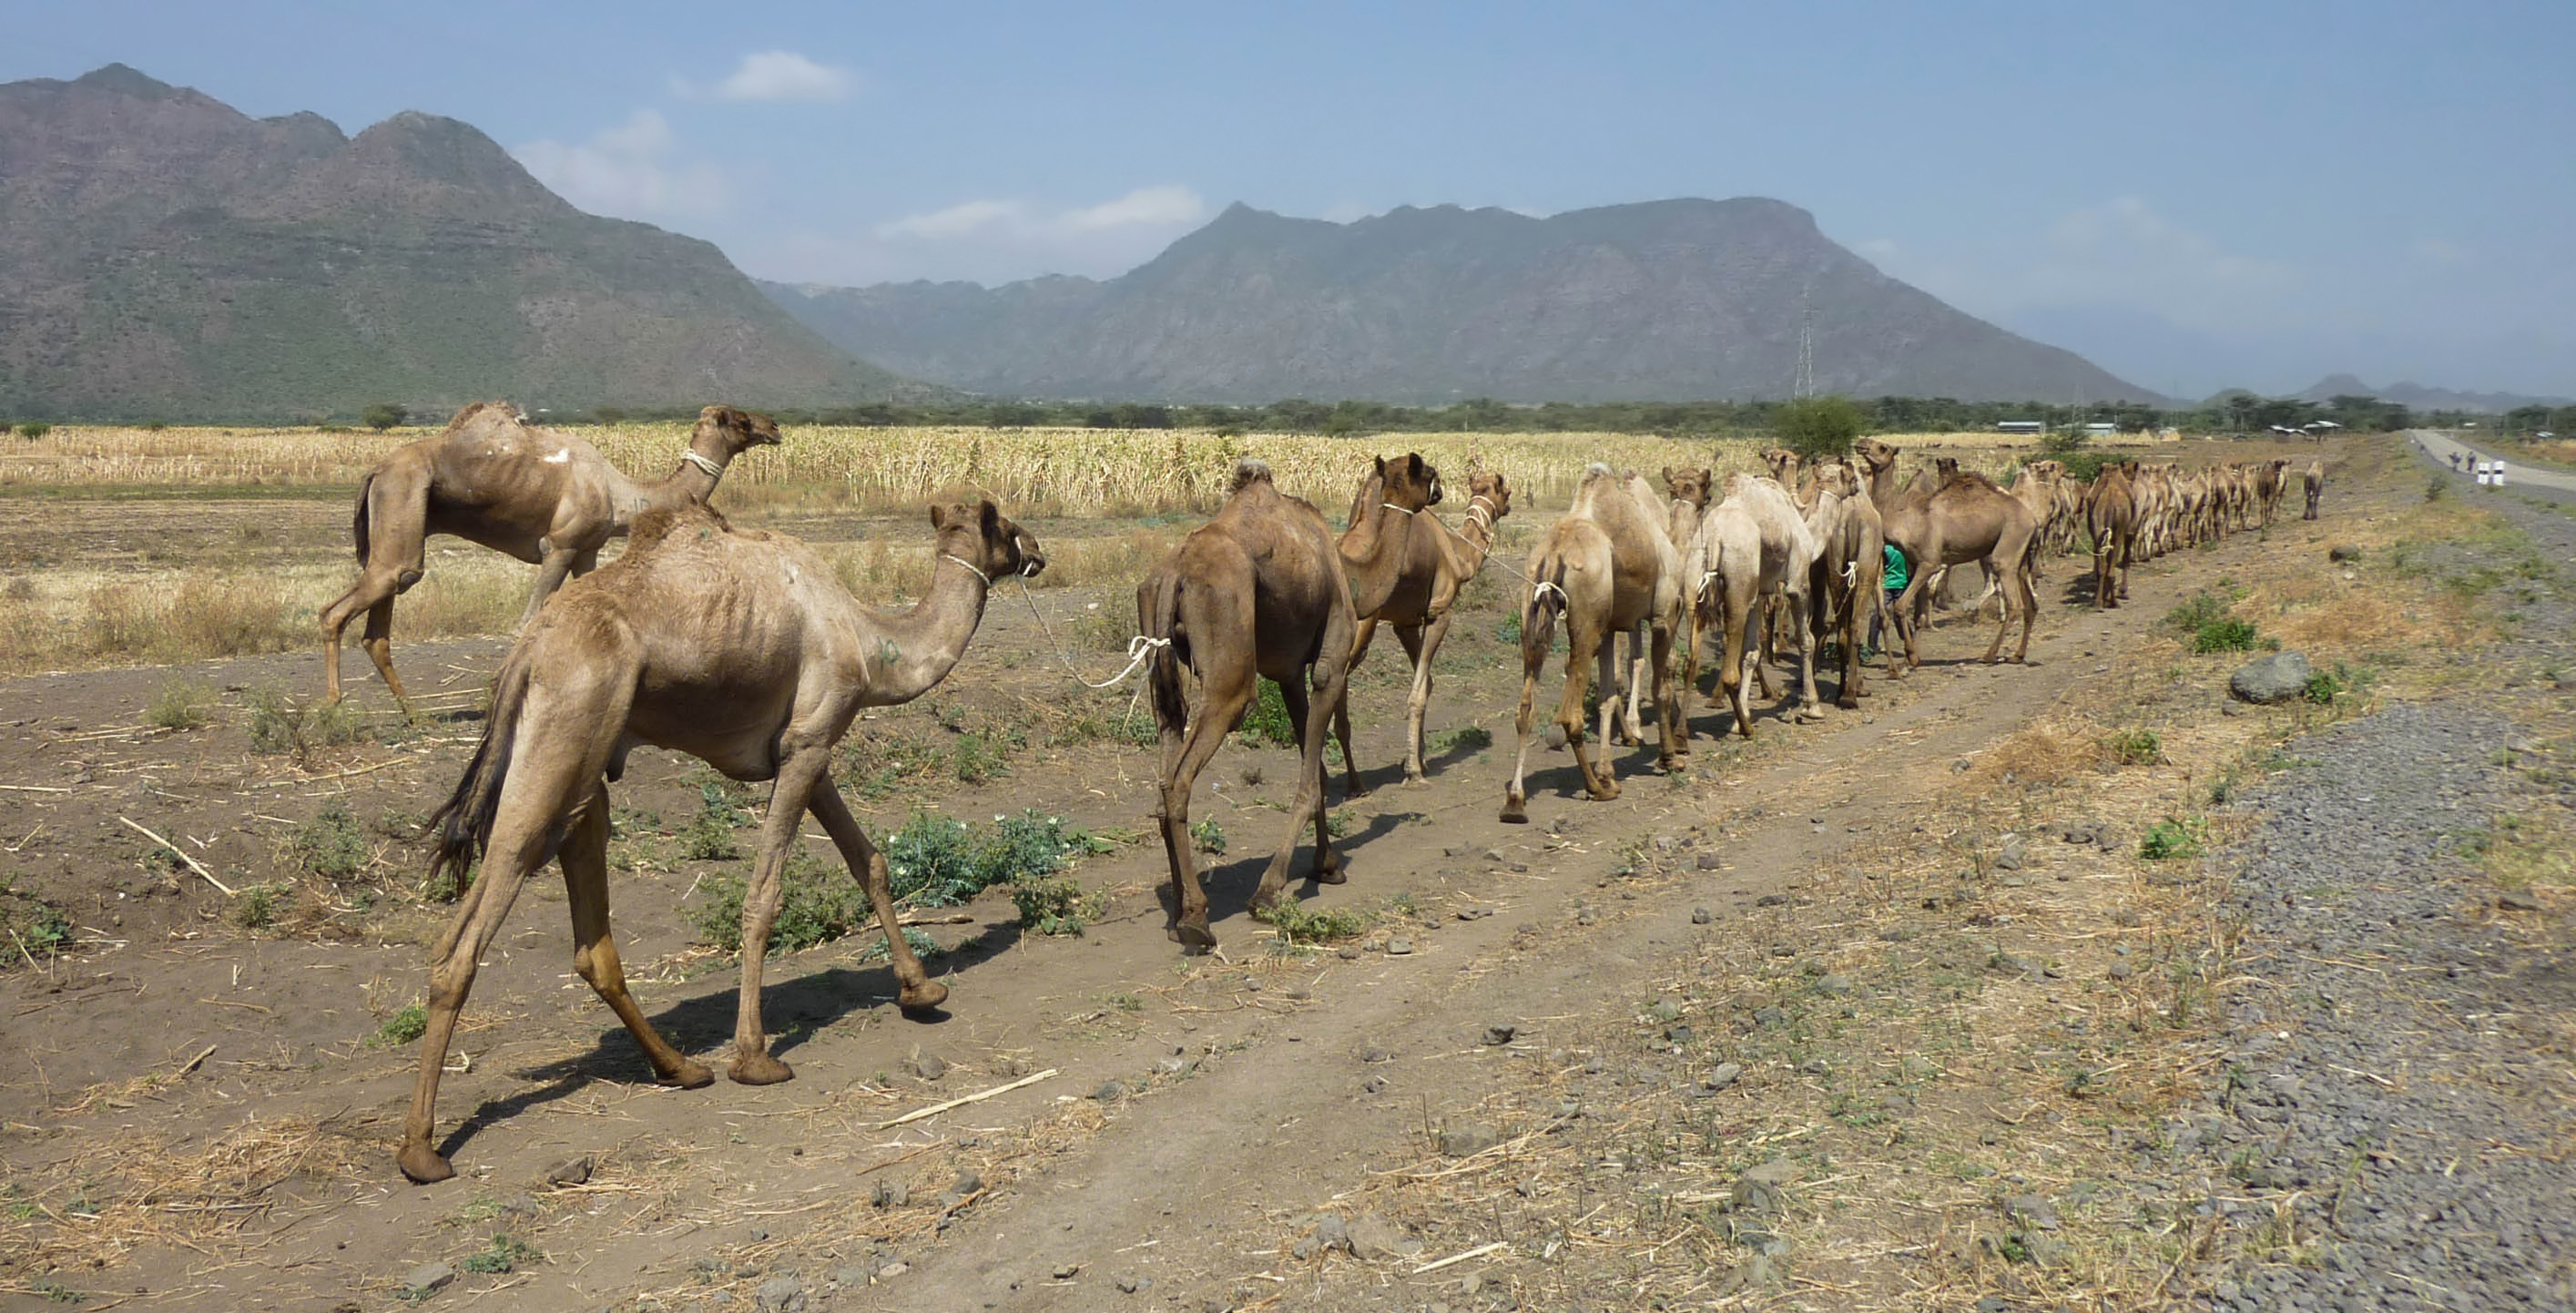 Camels in Ethiopia 02